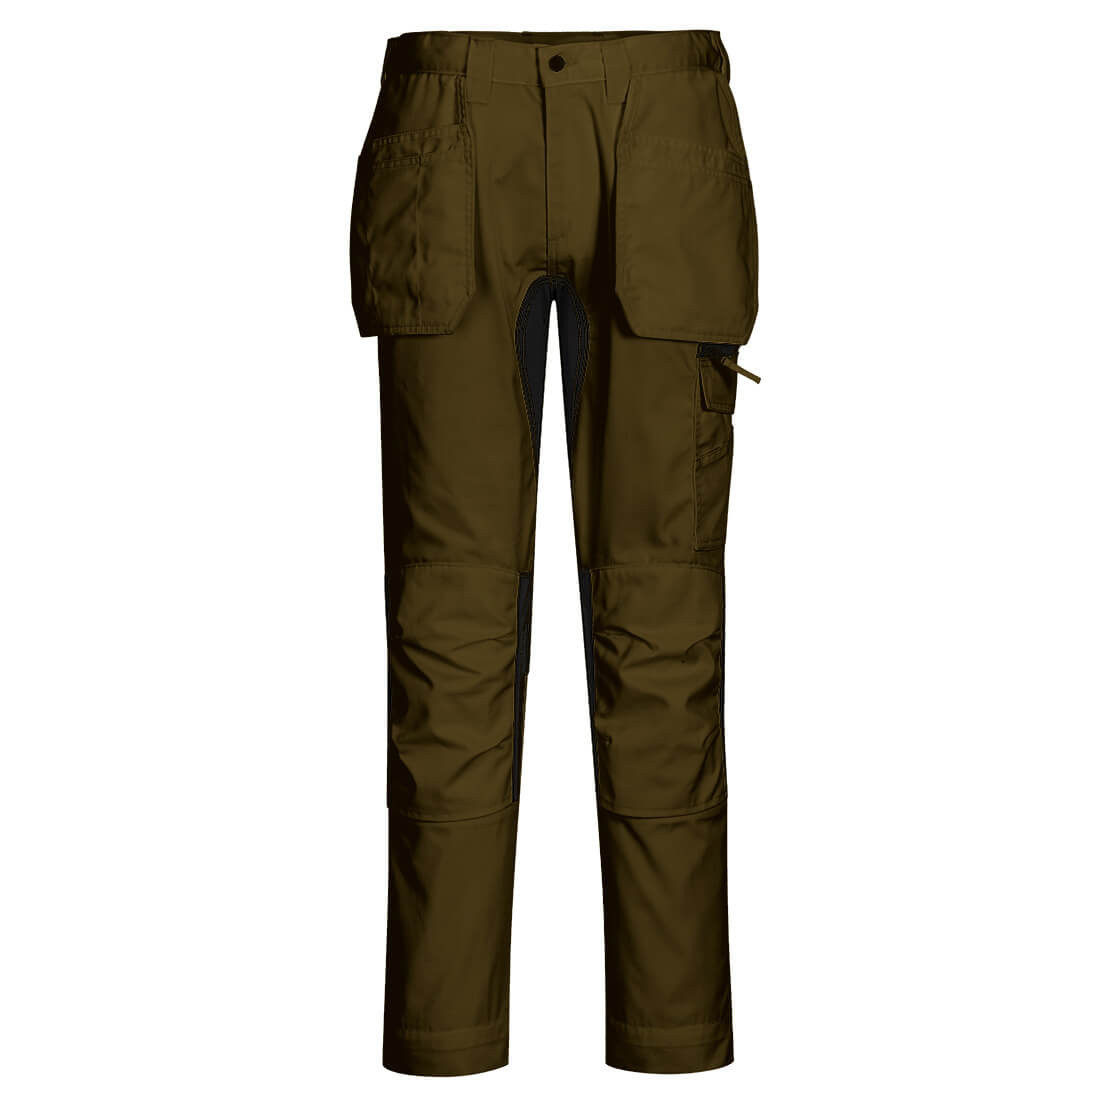 Pantalon extensible WX2 Holster - Les vêtements de protection